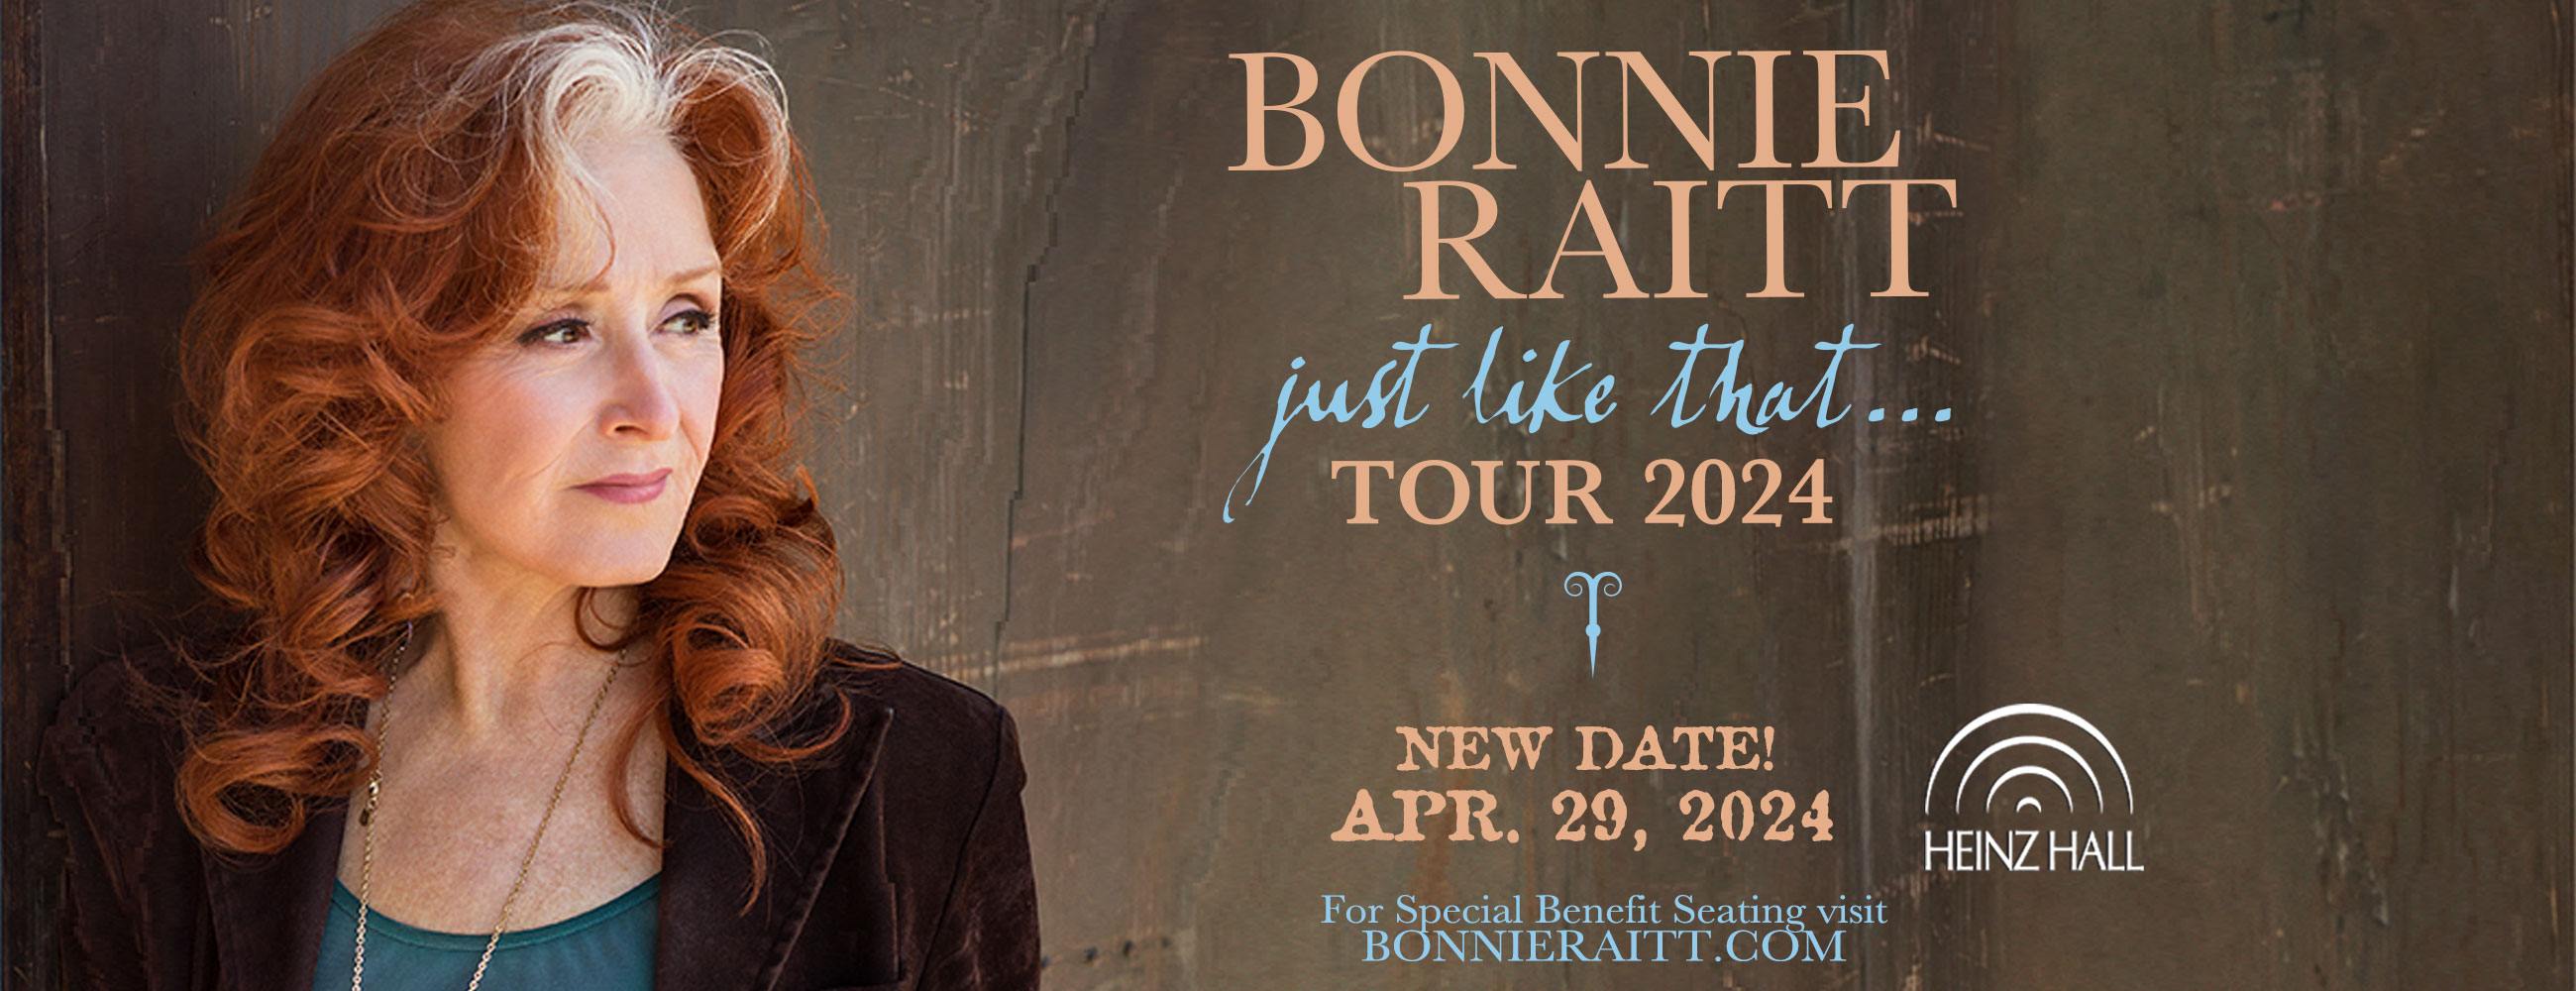 bonnie raitt tour band